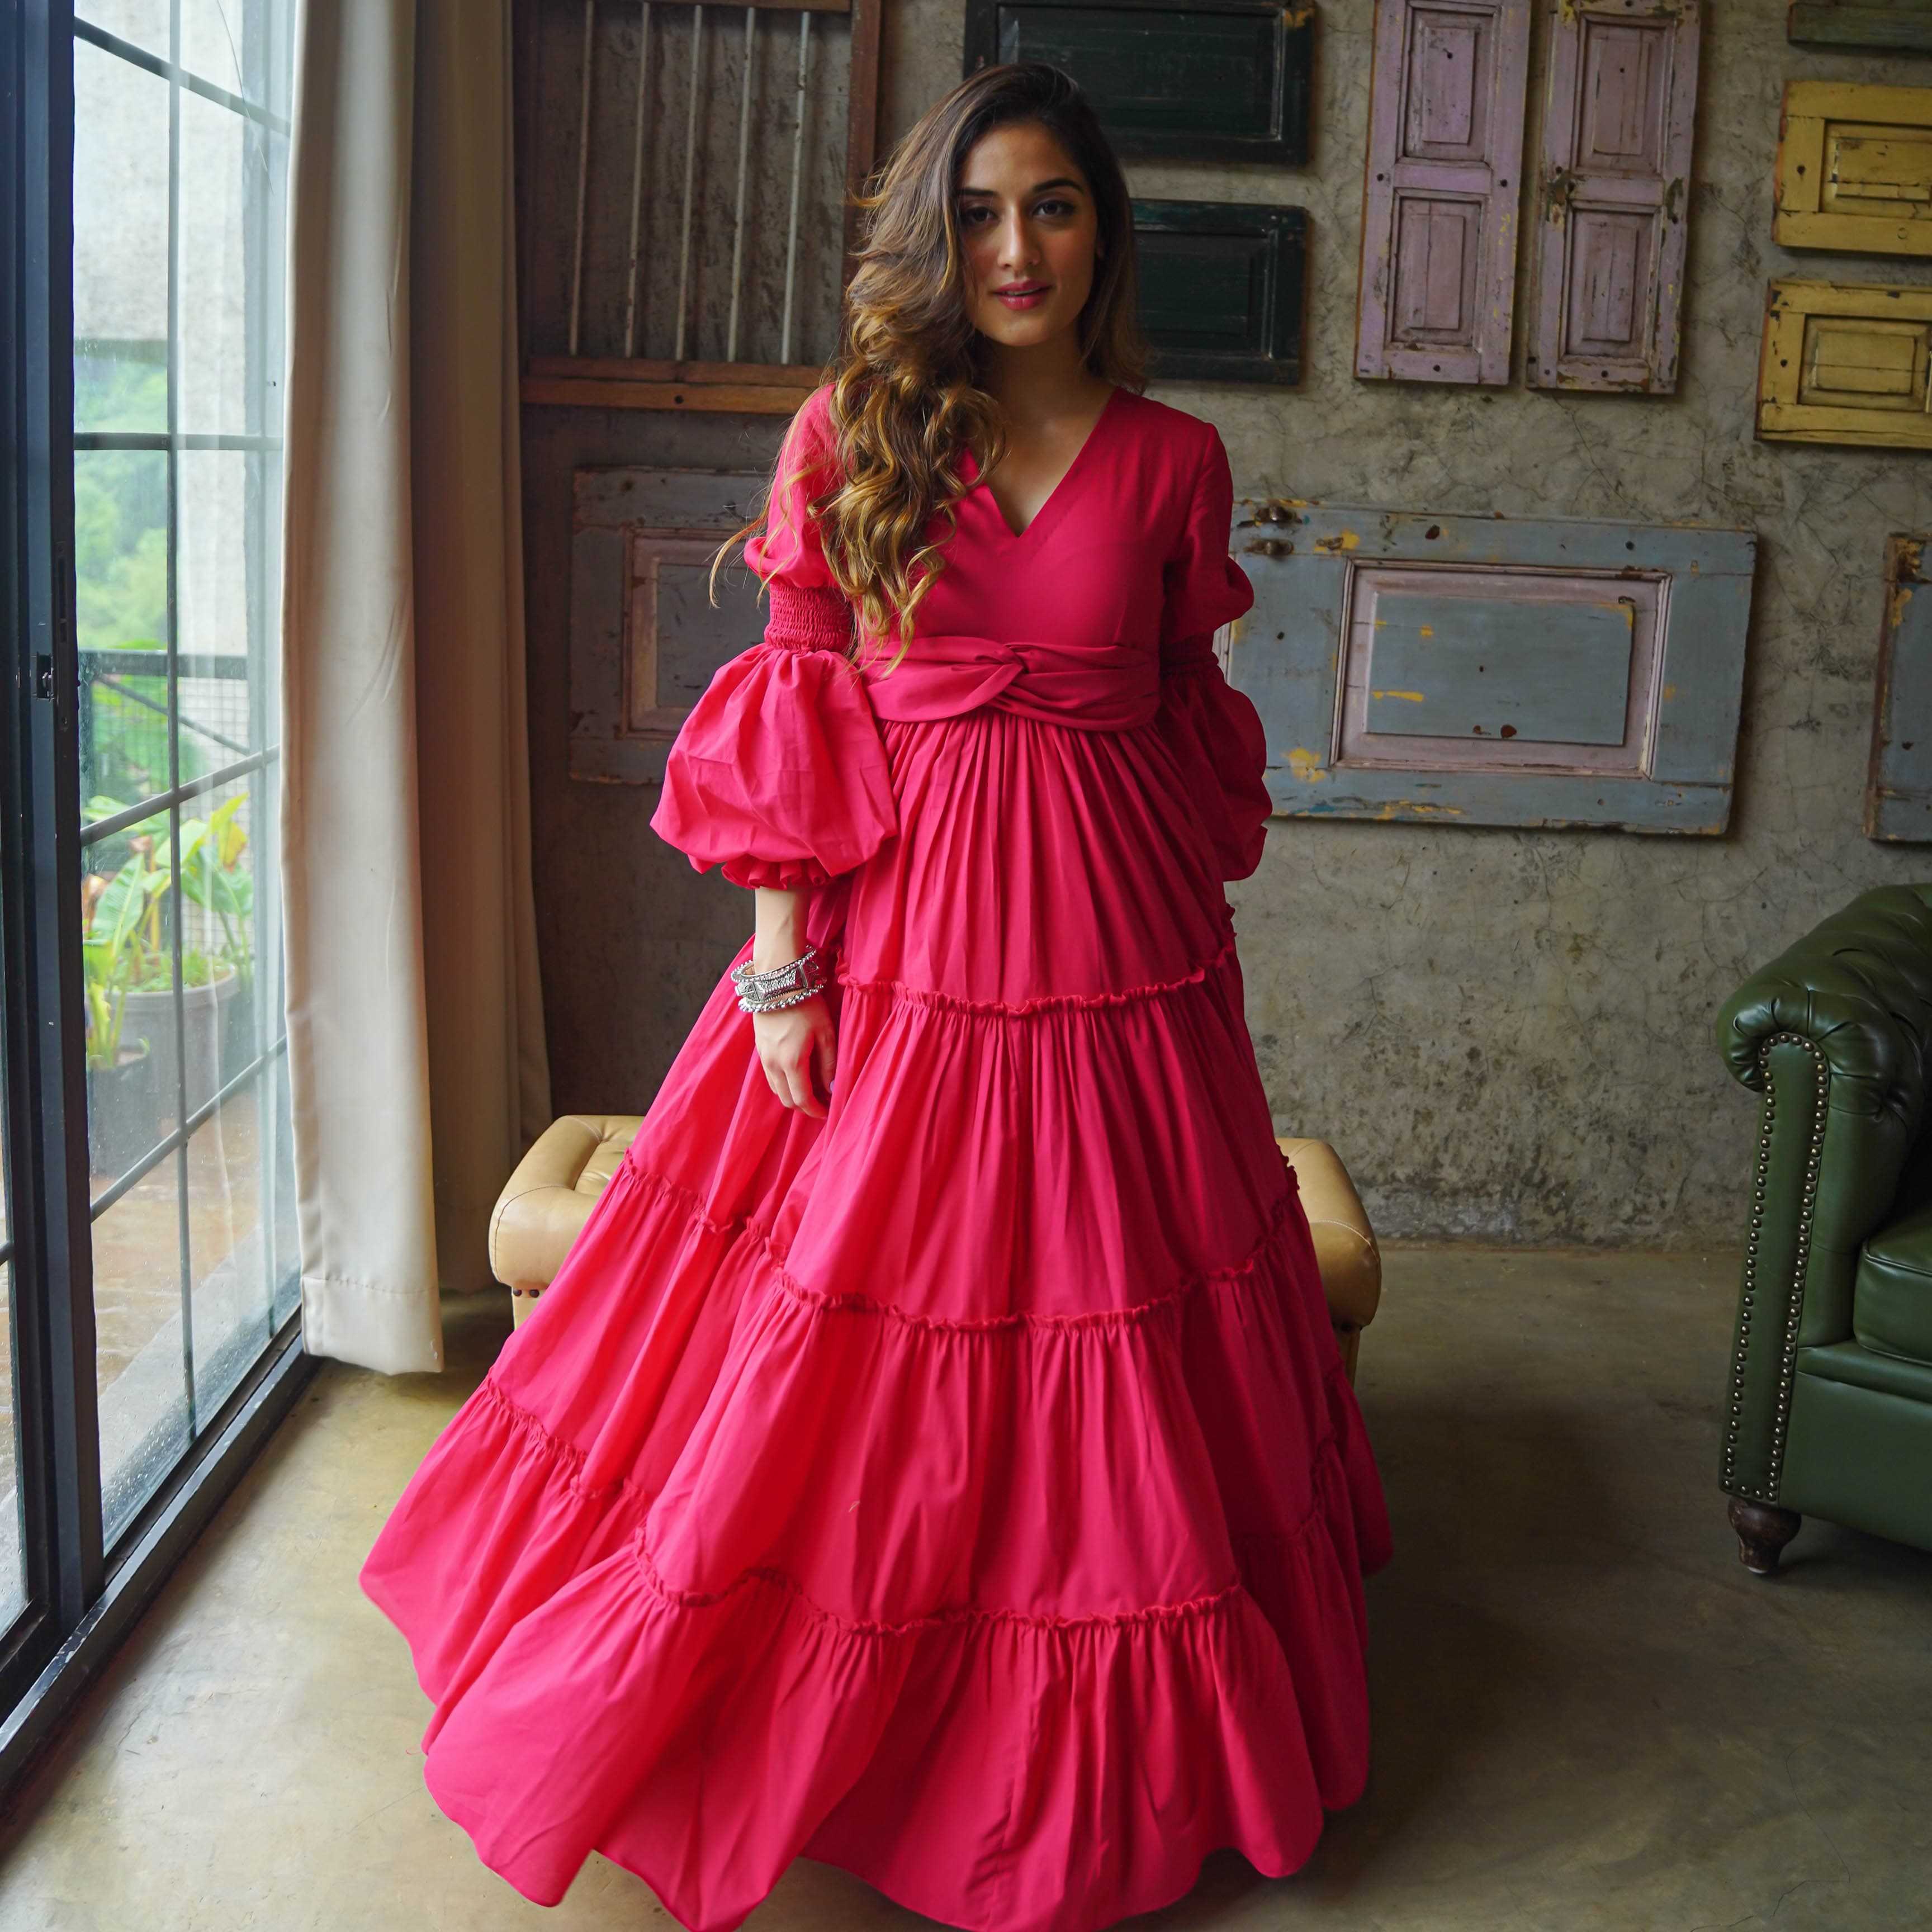 Amara Belt Pink Cotton Maxi Dress For Women Online